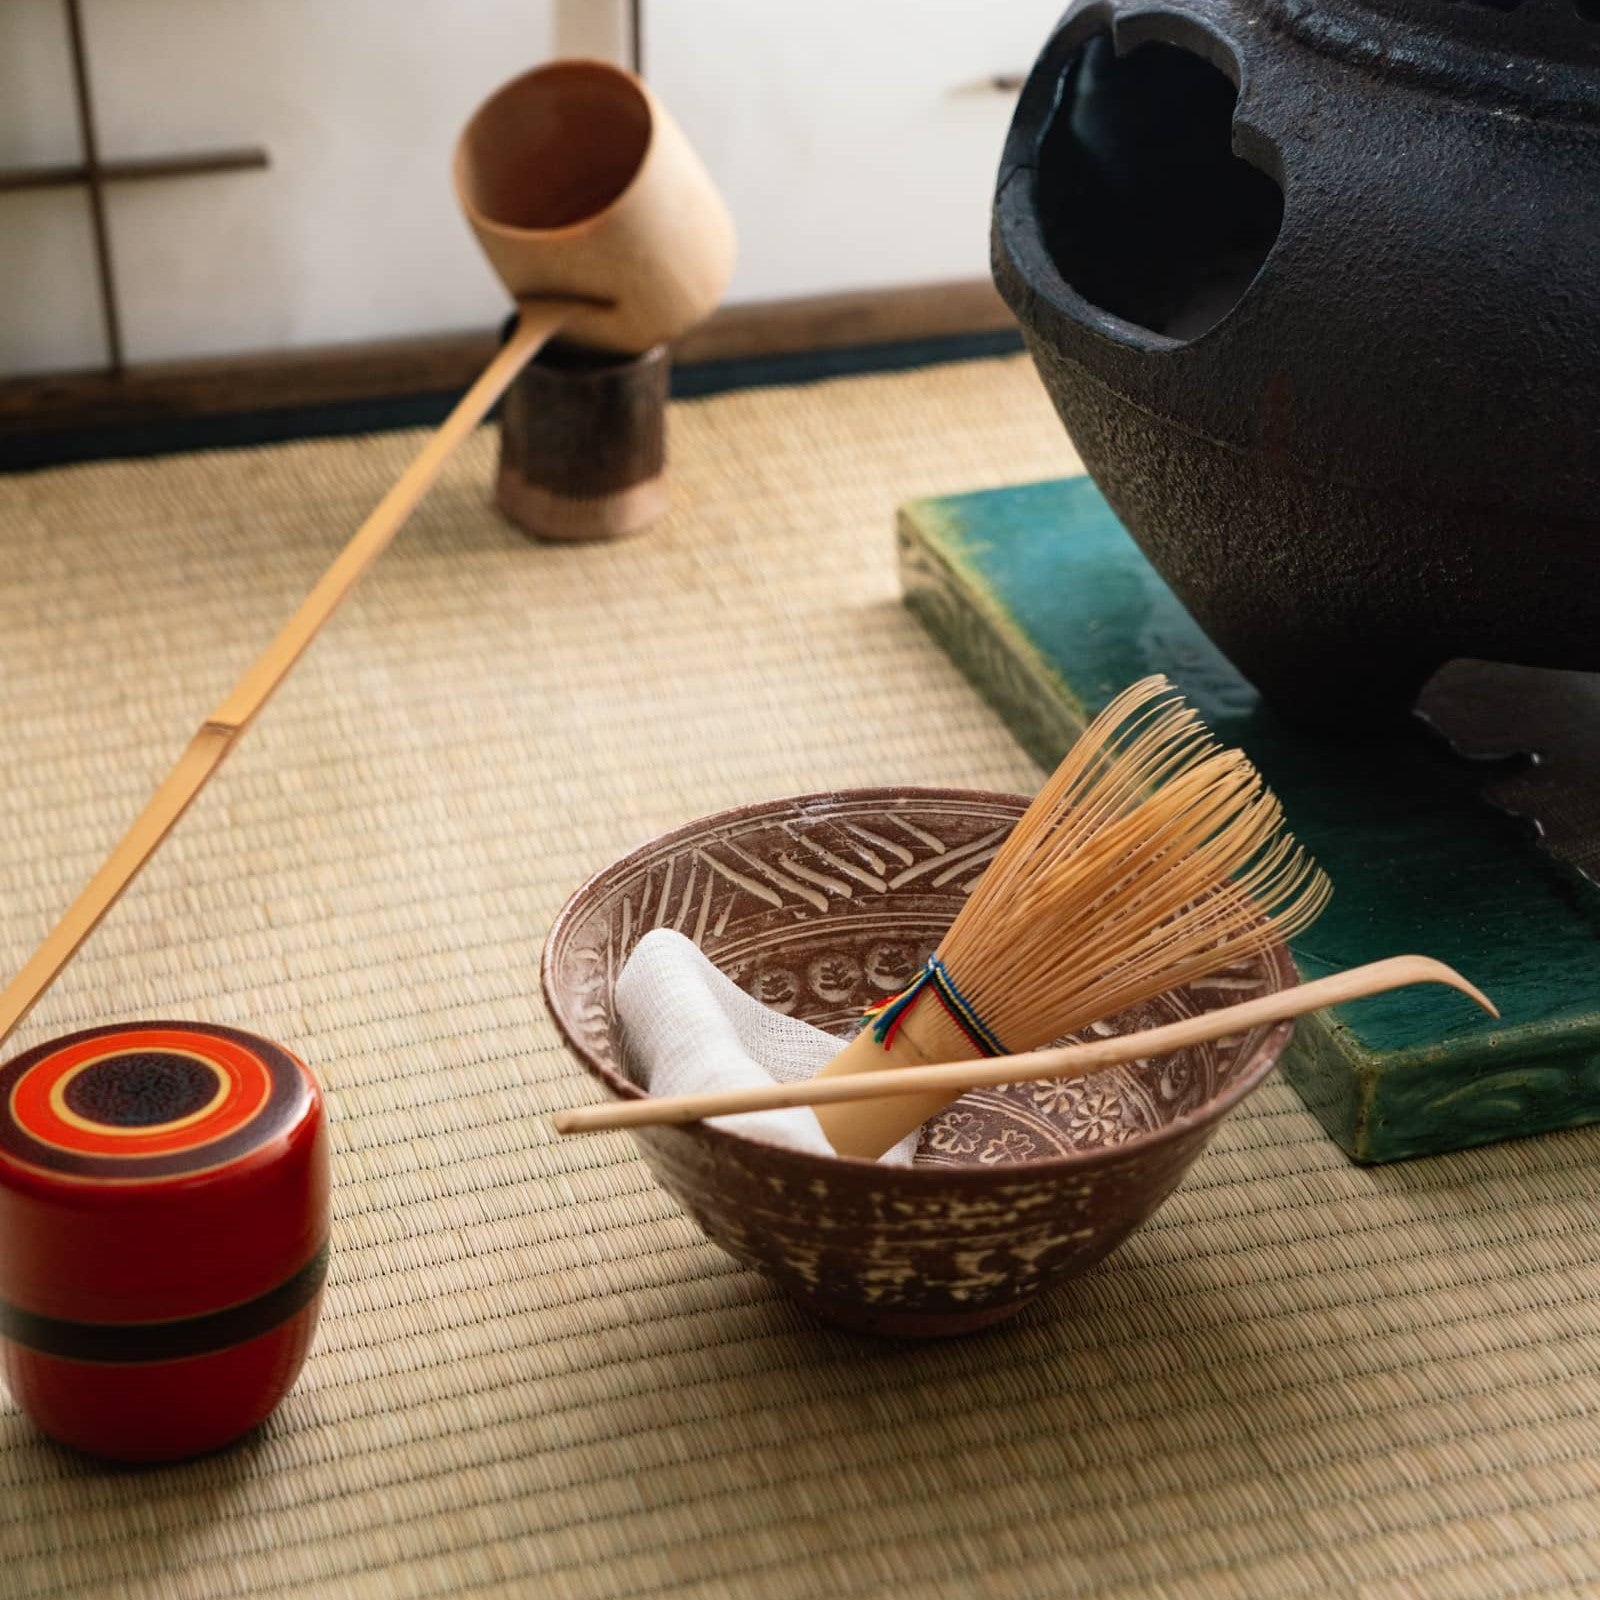 Tea Ceremony Utensils – Tezumi